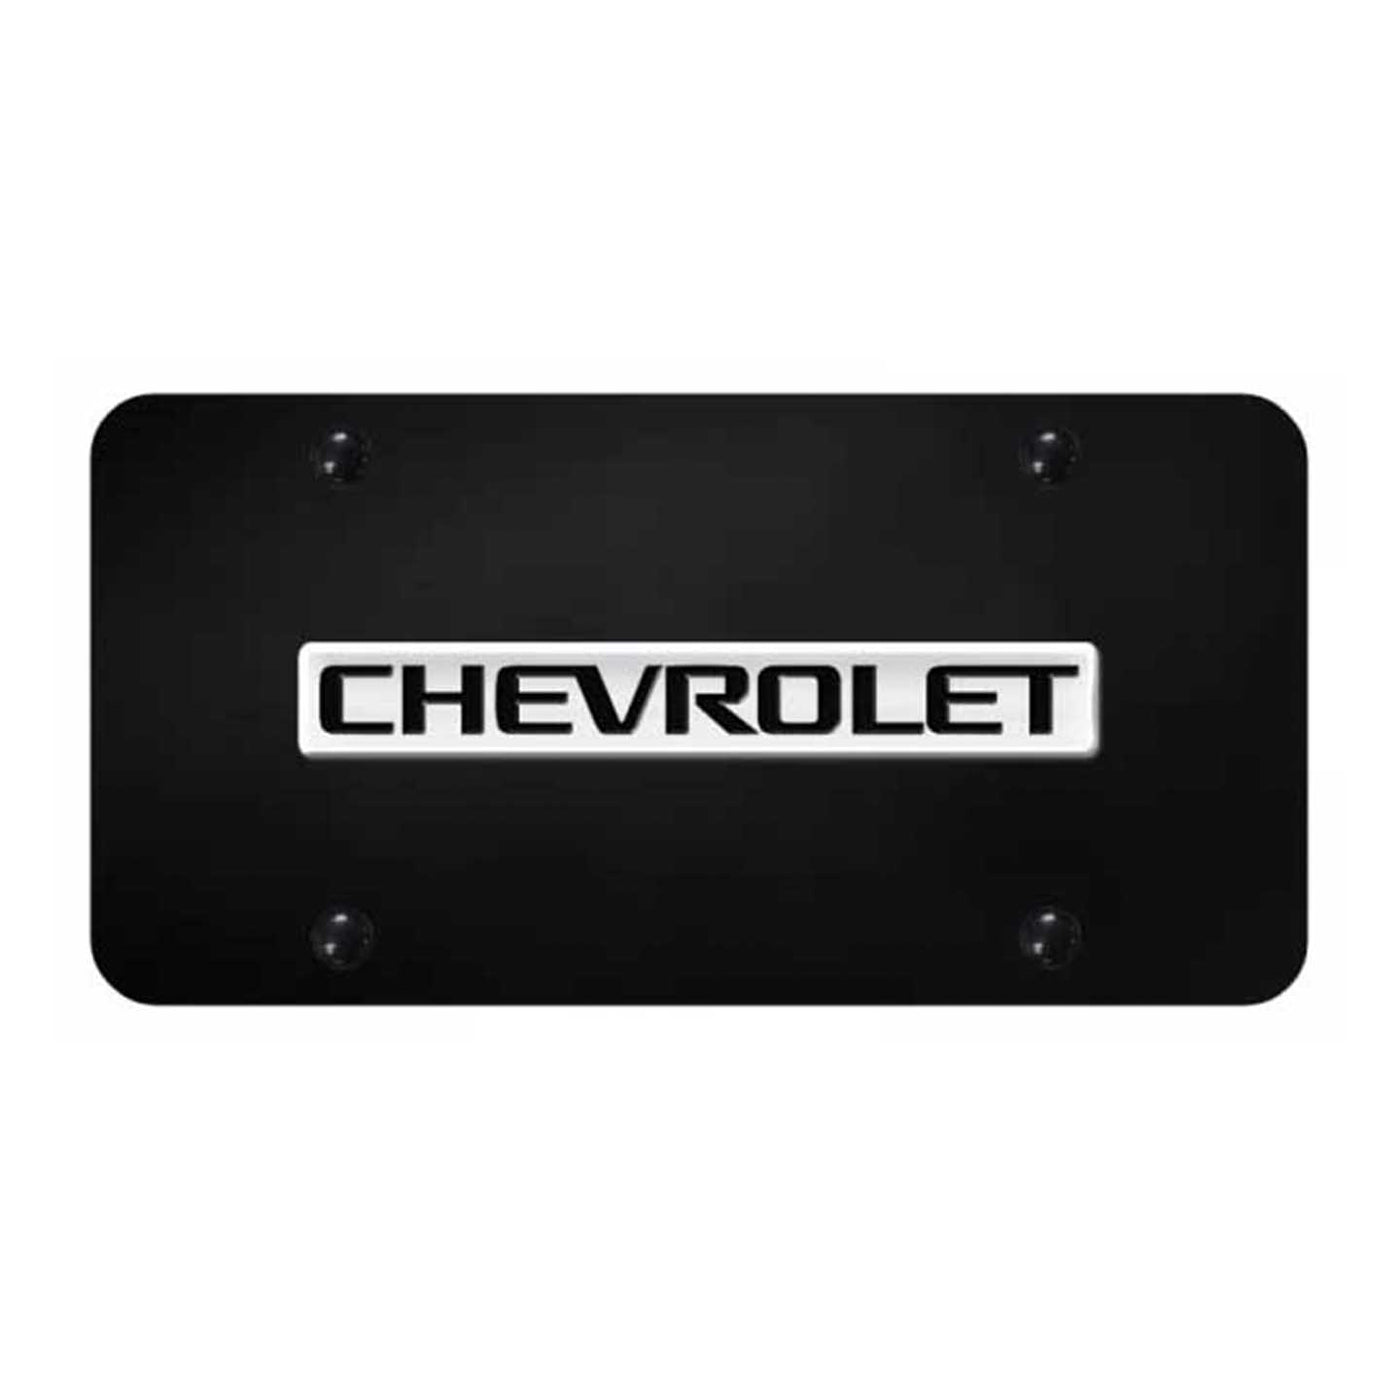 Chevrolet Name License Plate - Chrome on Black